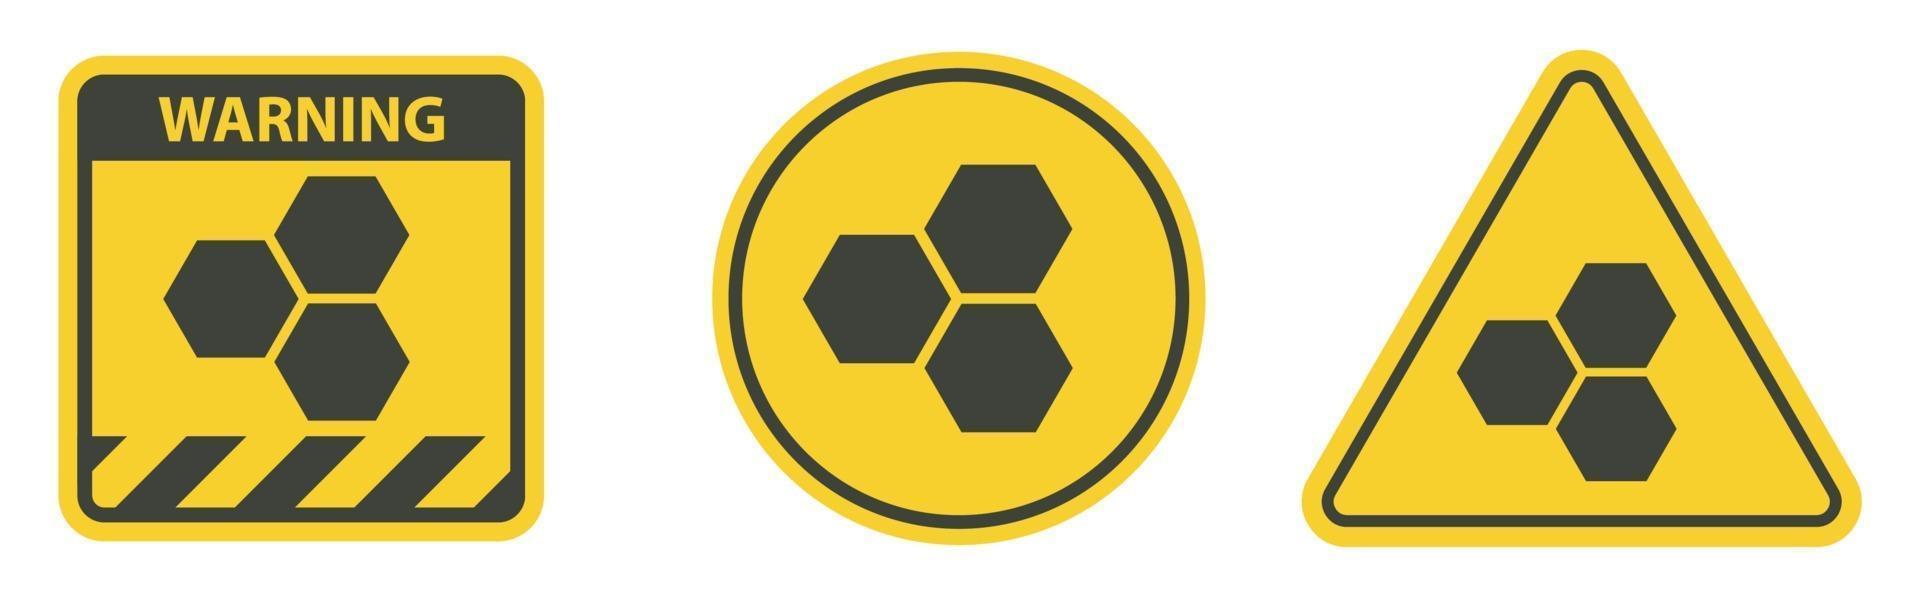 Símbolo do ícone de favo de mel isolado no fundo branco, ilustração vetorial vetor